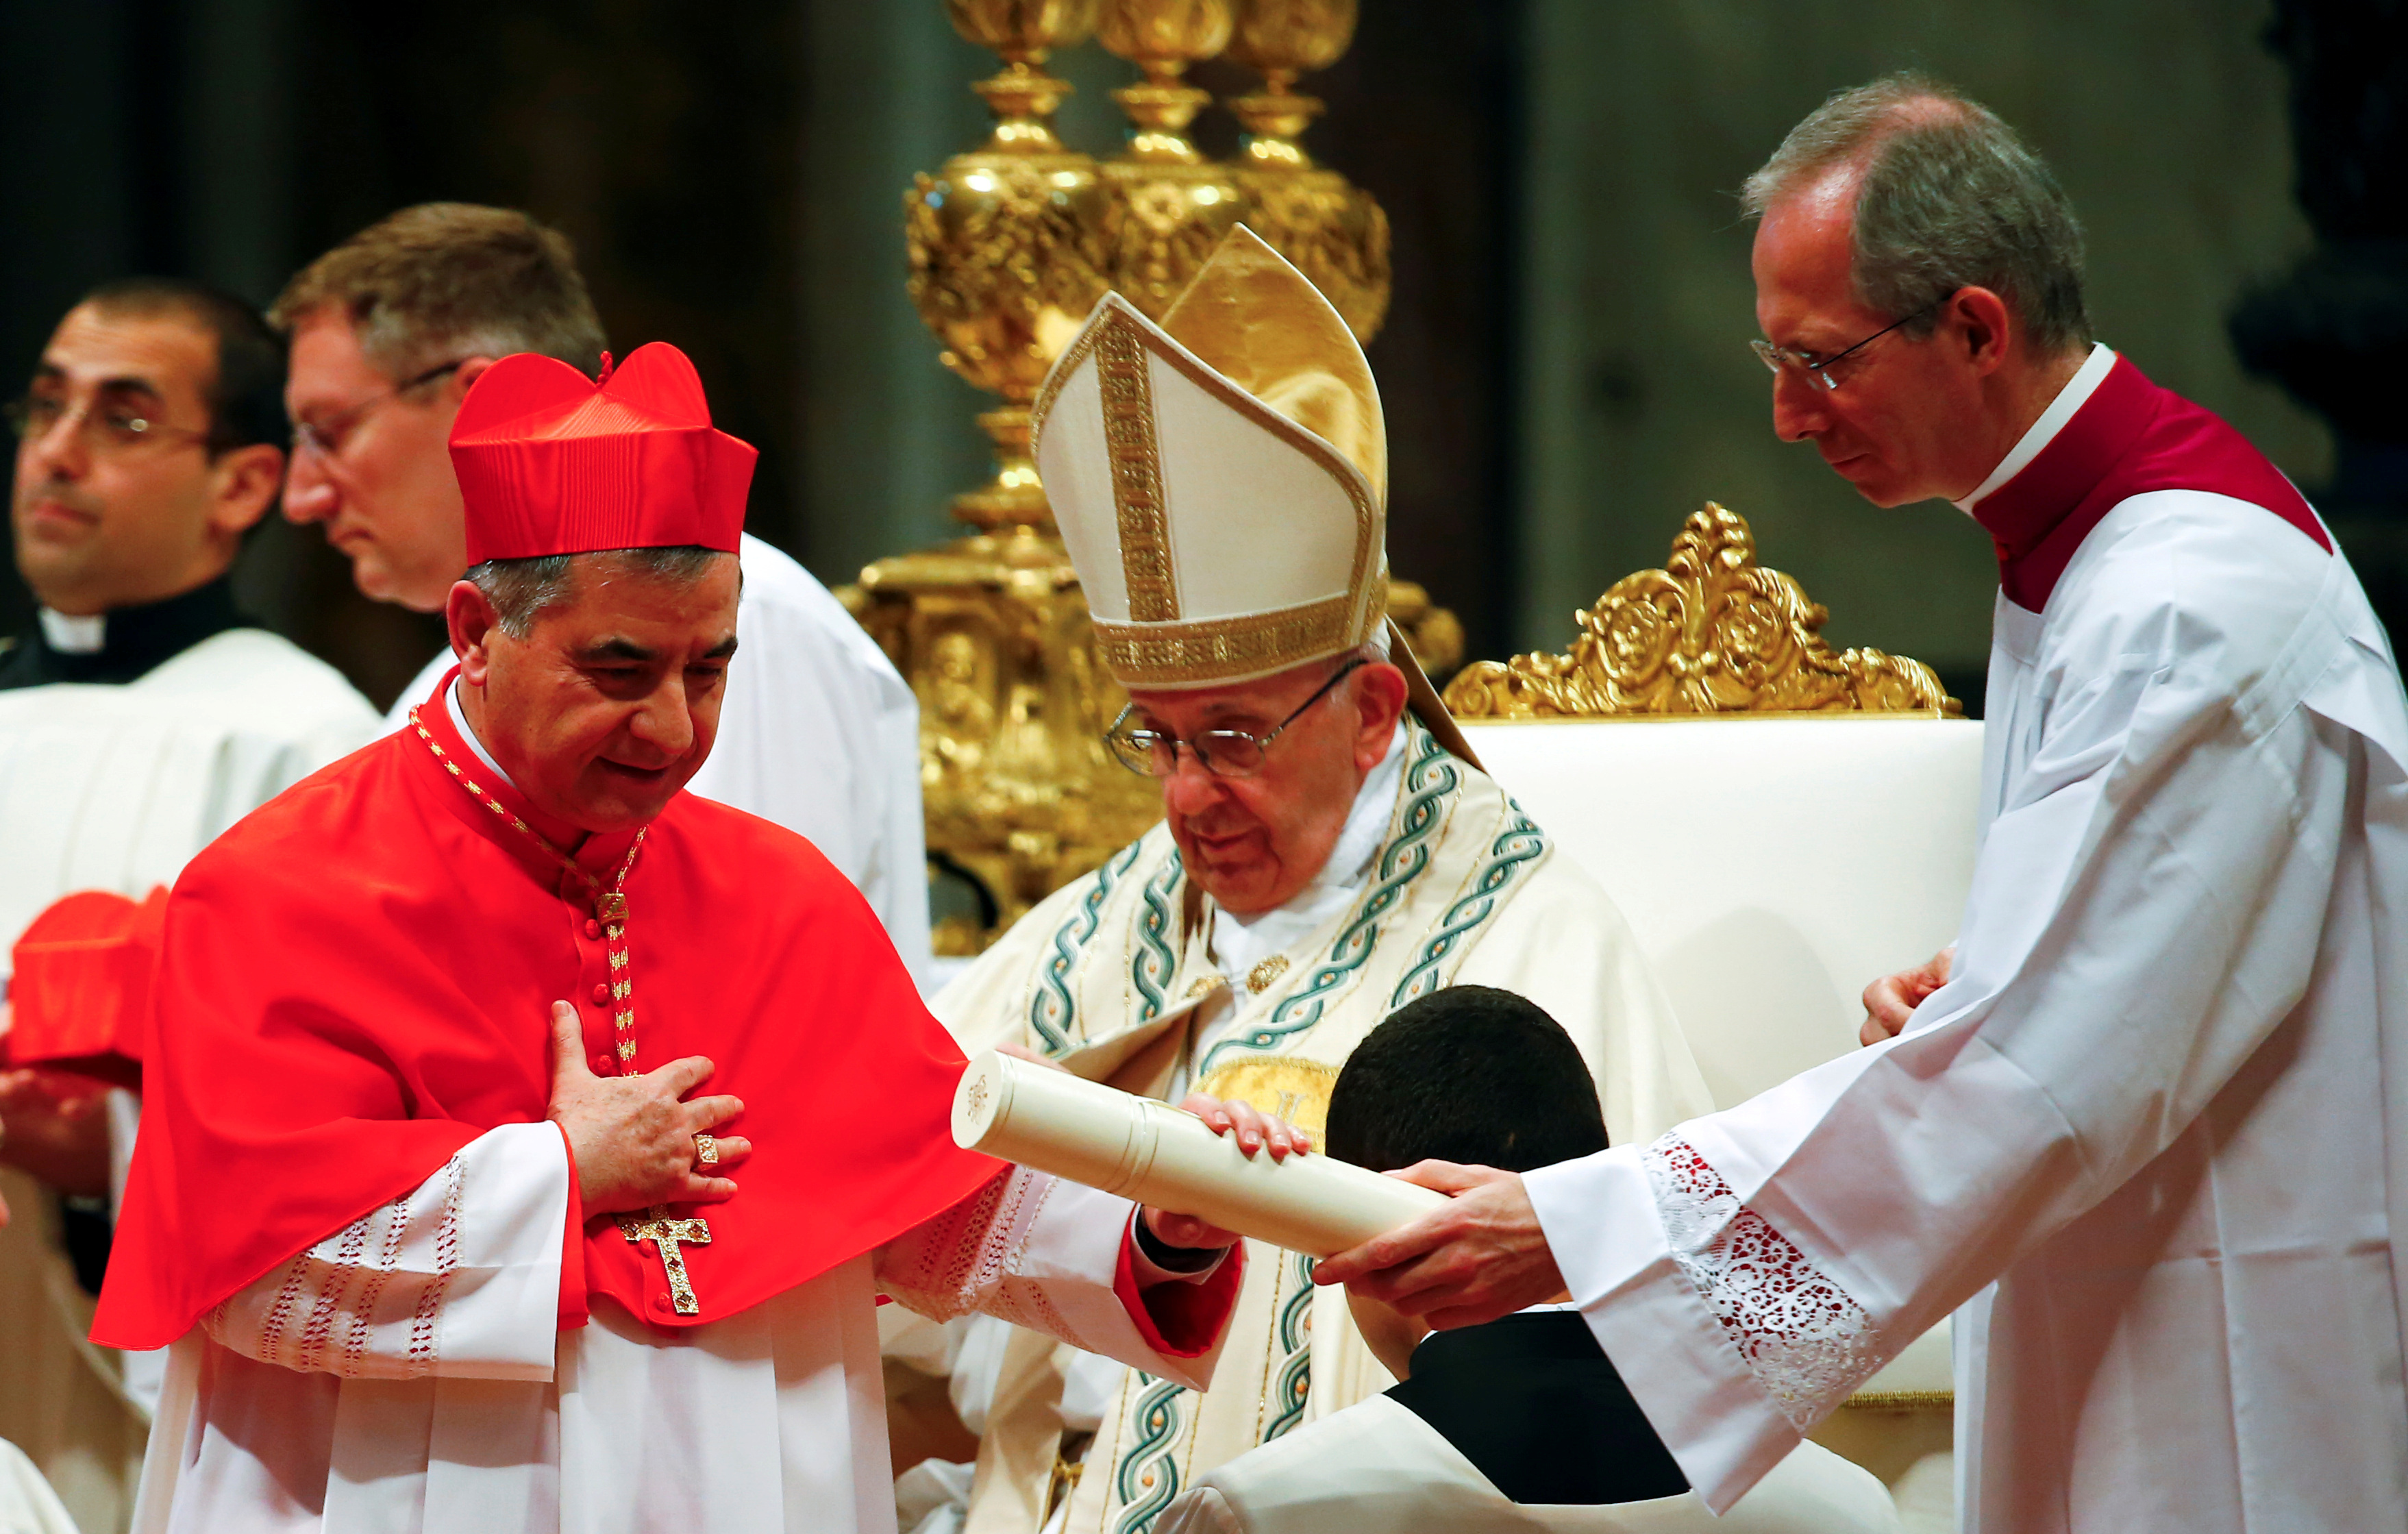 La Corte del Vaticano tuvo acceso a una llamada telefónica del Papa grabada en secreto (REUTERS)